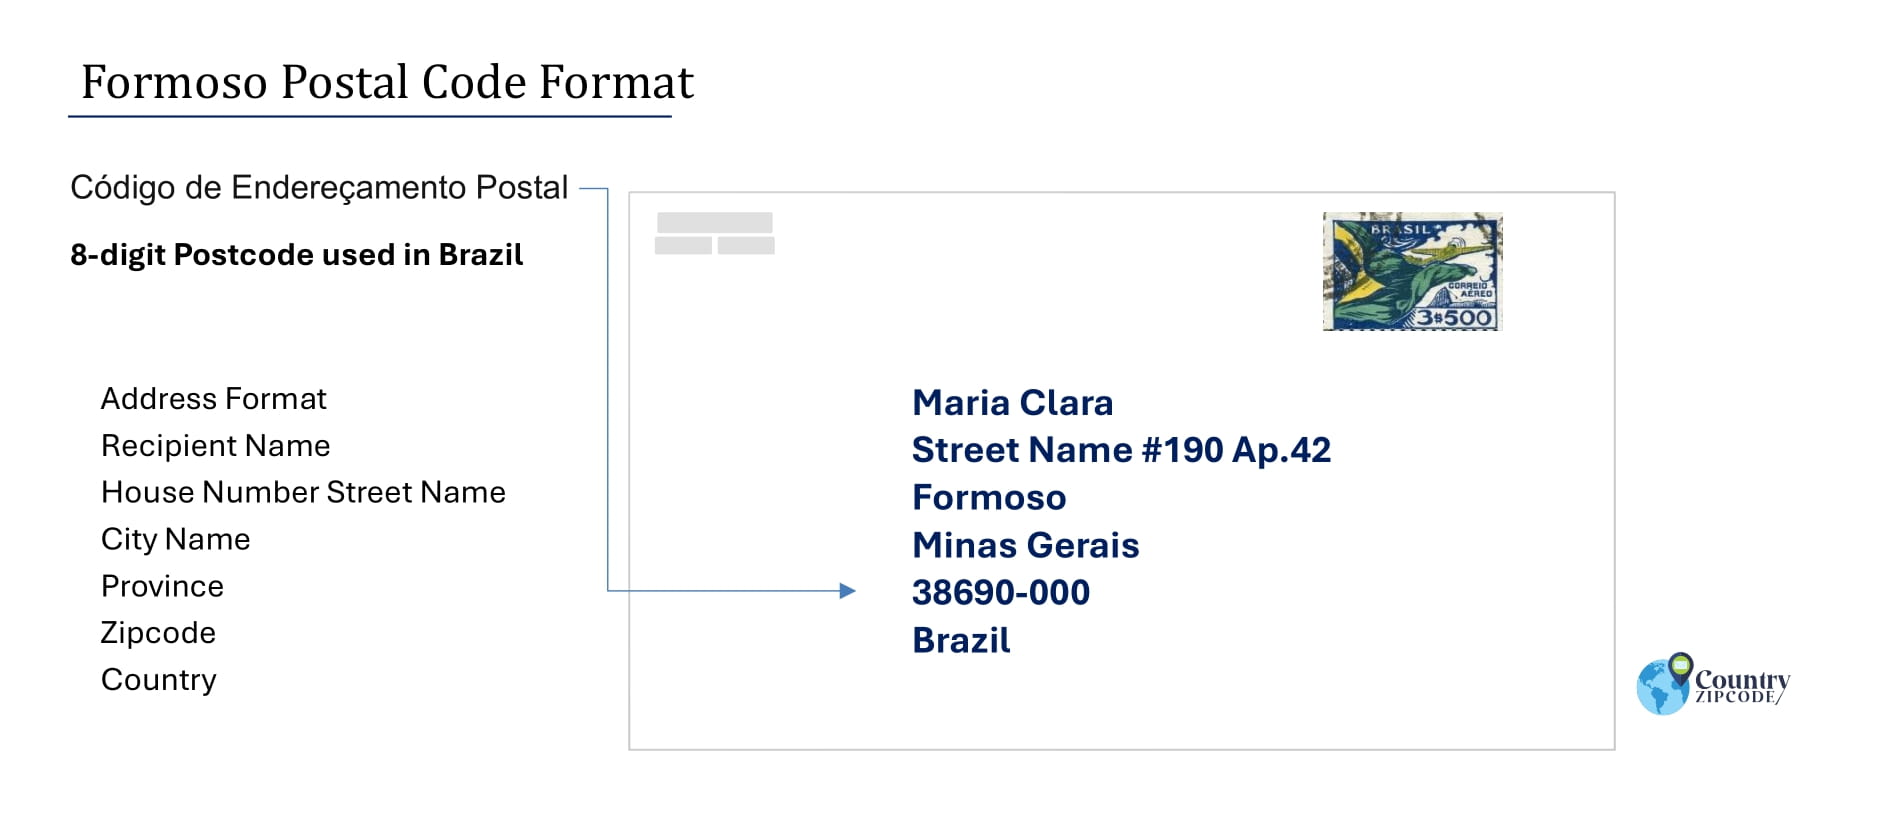 Example of Codigo de Enderecamento Postal and Address format of Formoso Minas Gerais Brazil